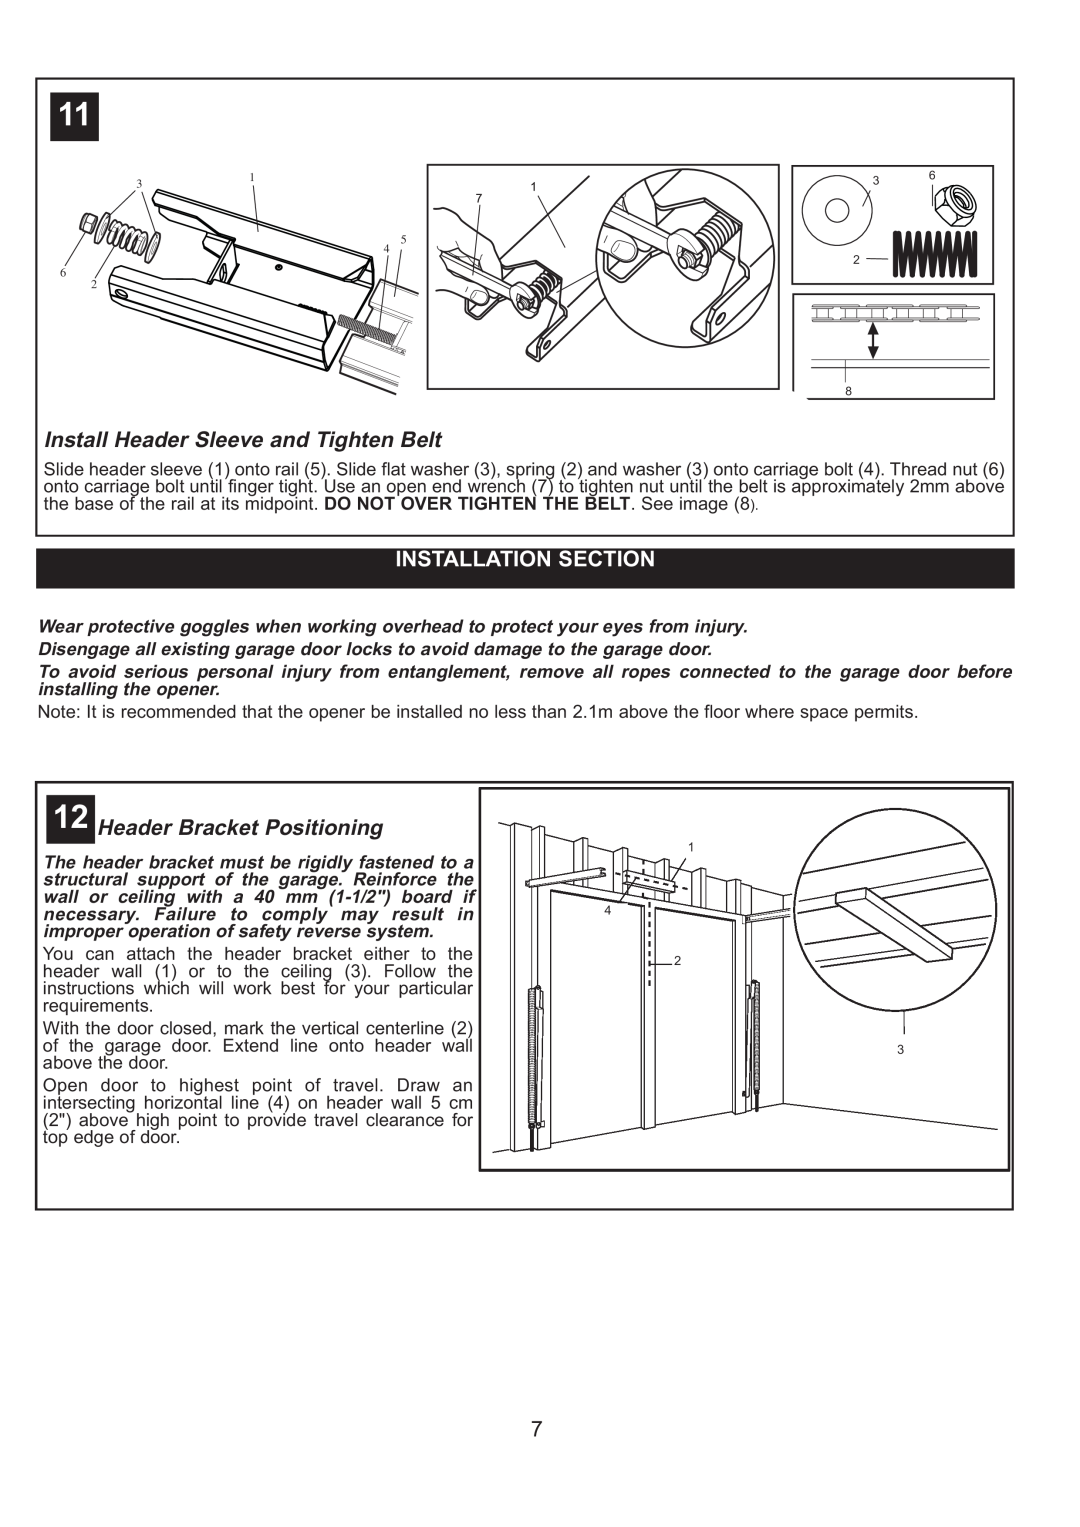 Sigma ML750 instruction manual Install Header Sleeve and Tighten Belt, Installation Section, Header Bracket Positioning 